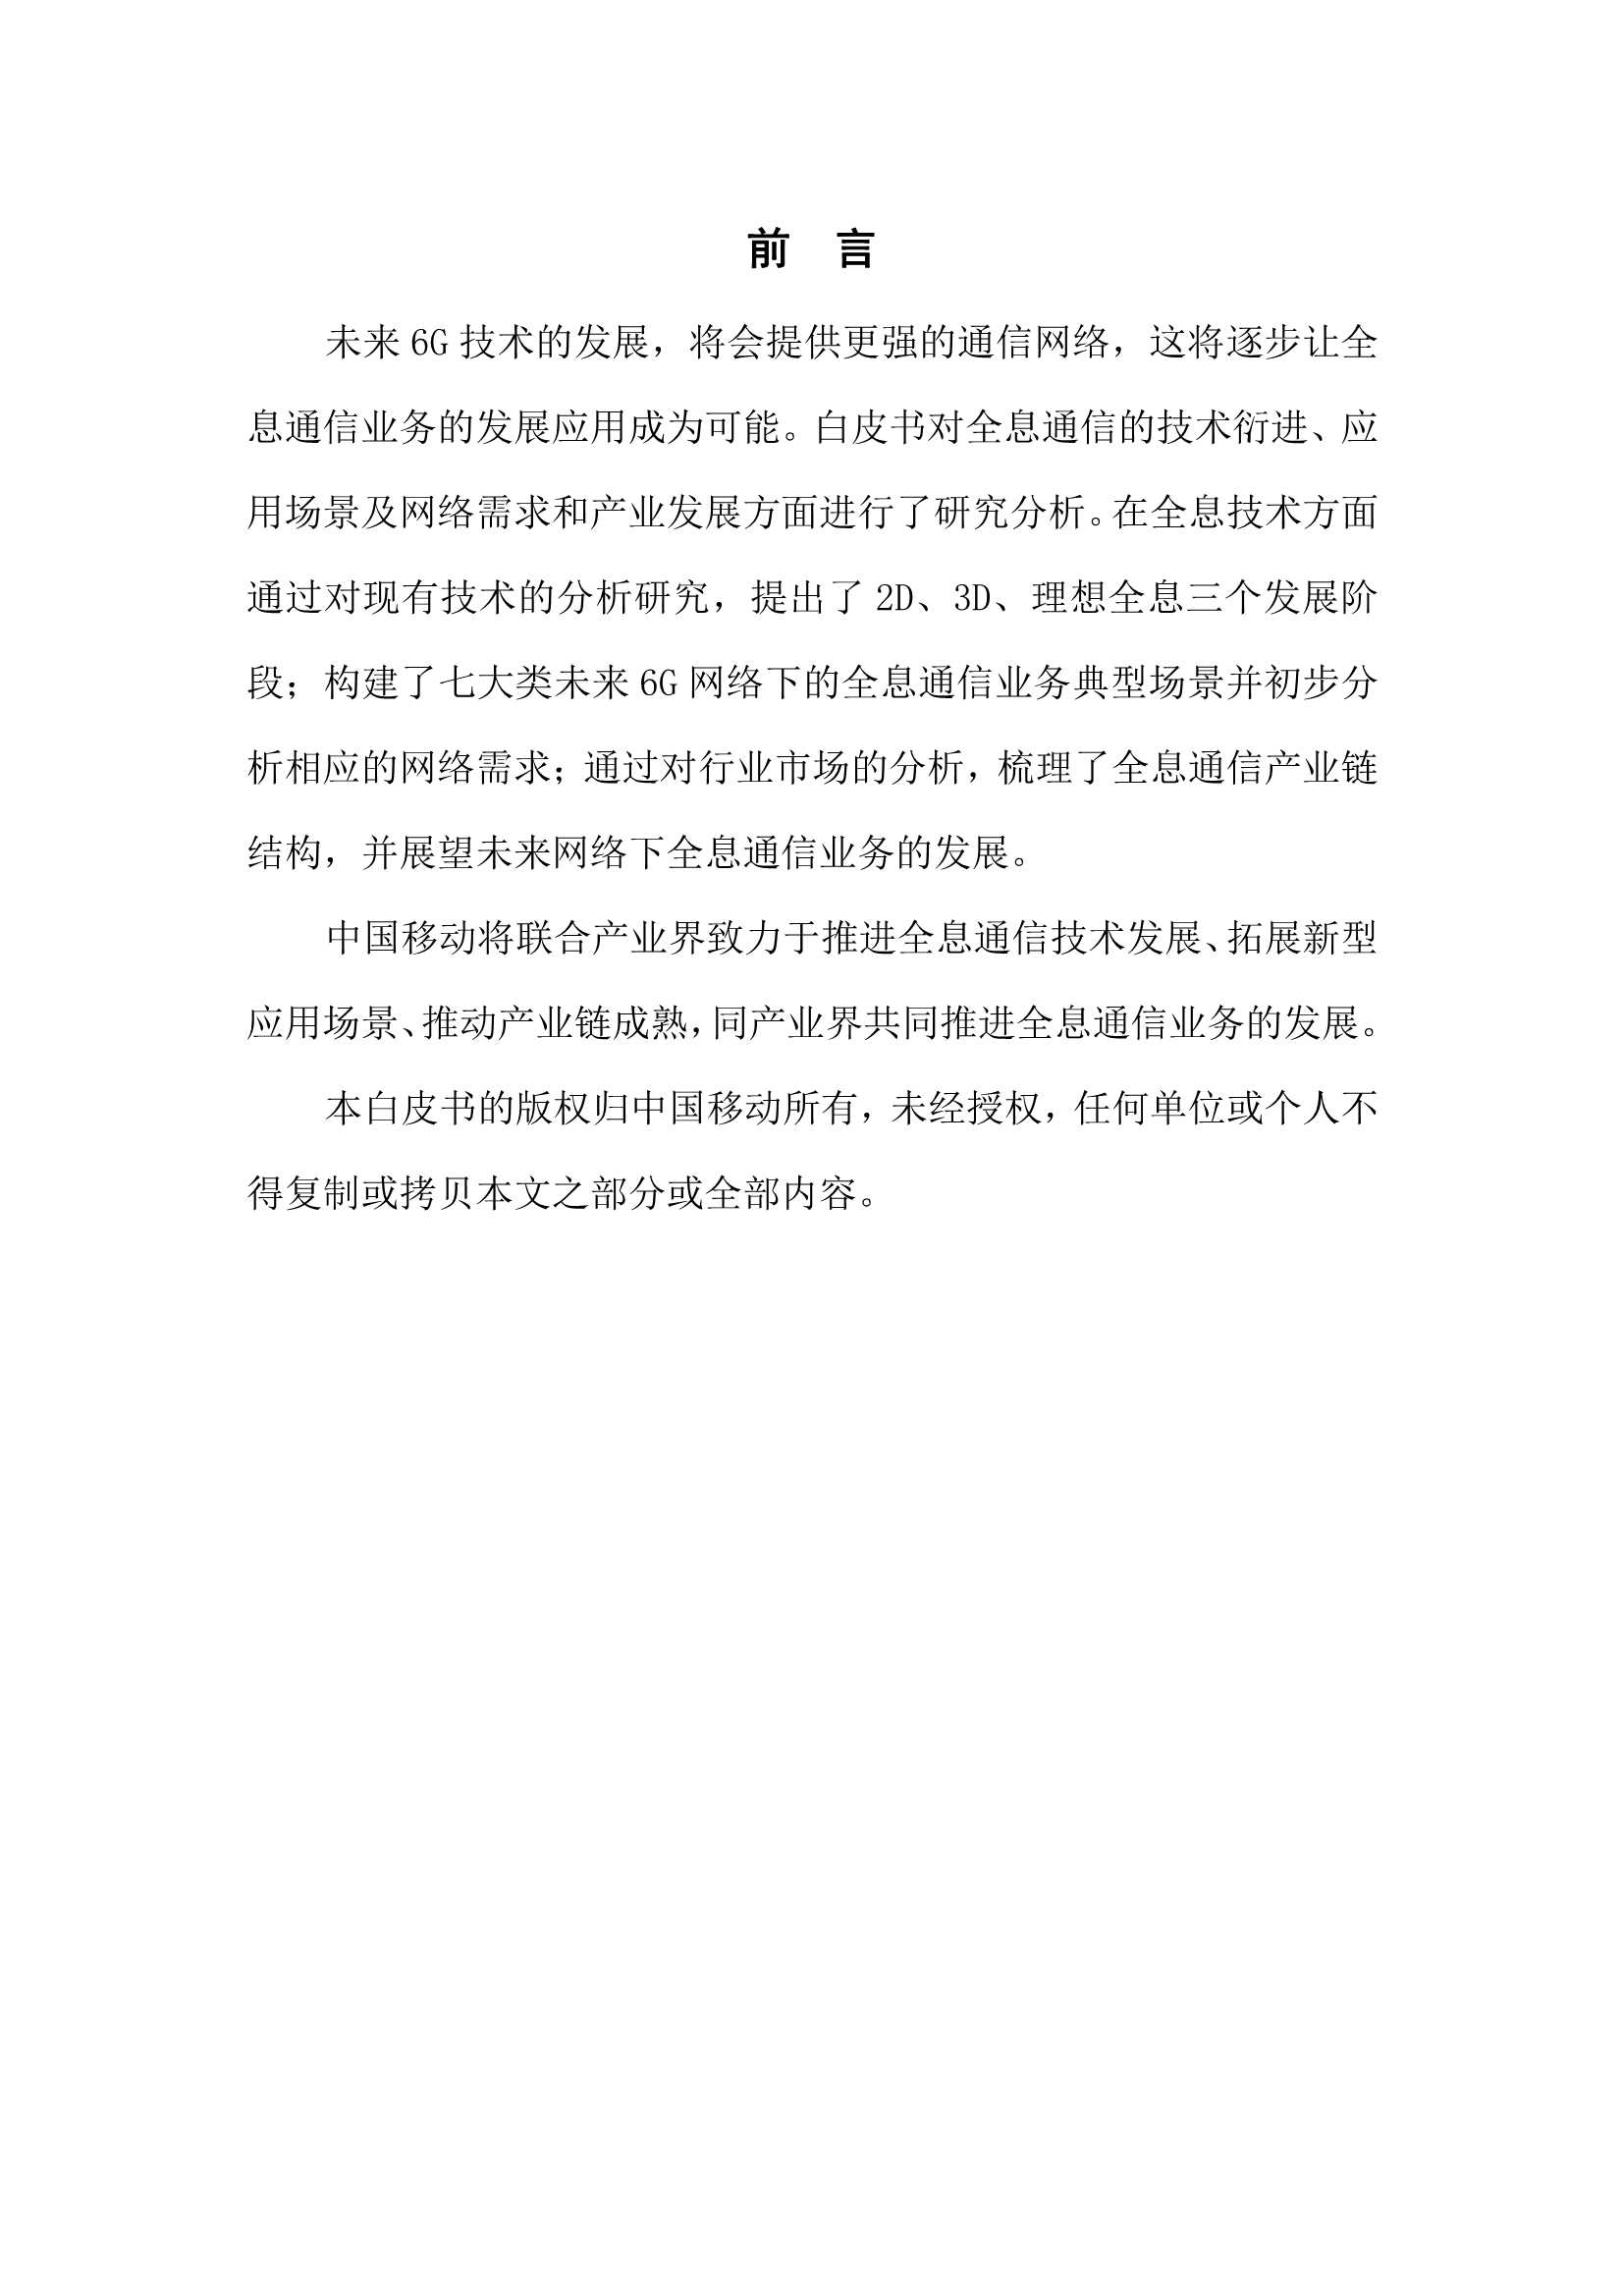 中国移动研究院-2022年6G全息通信业务发展趋势白皮书-2022.03-37页